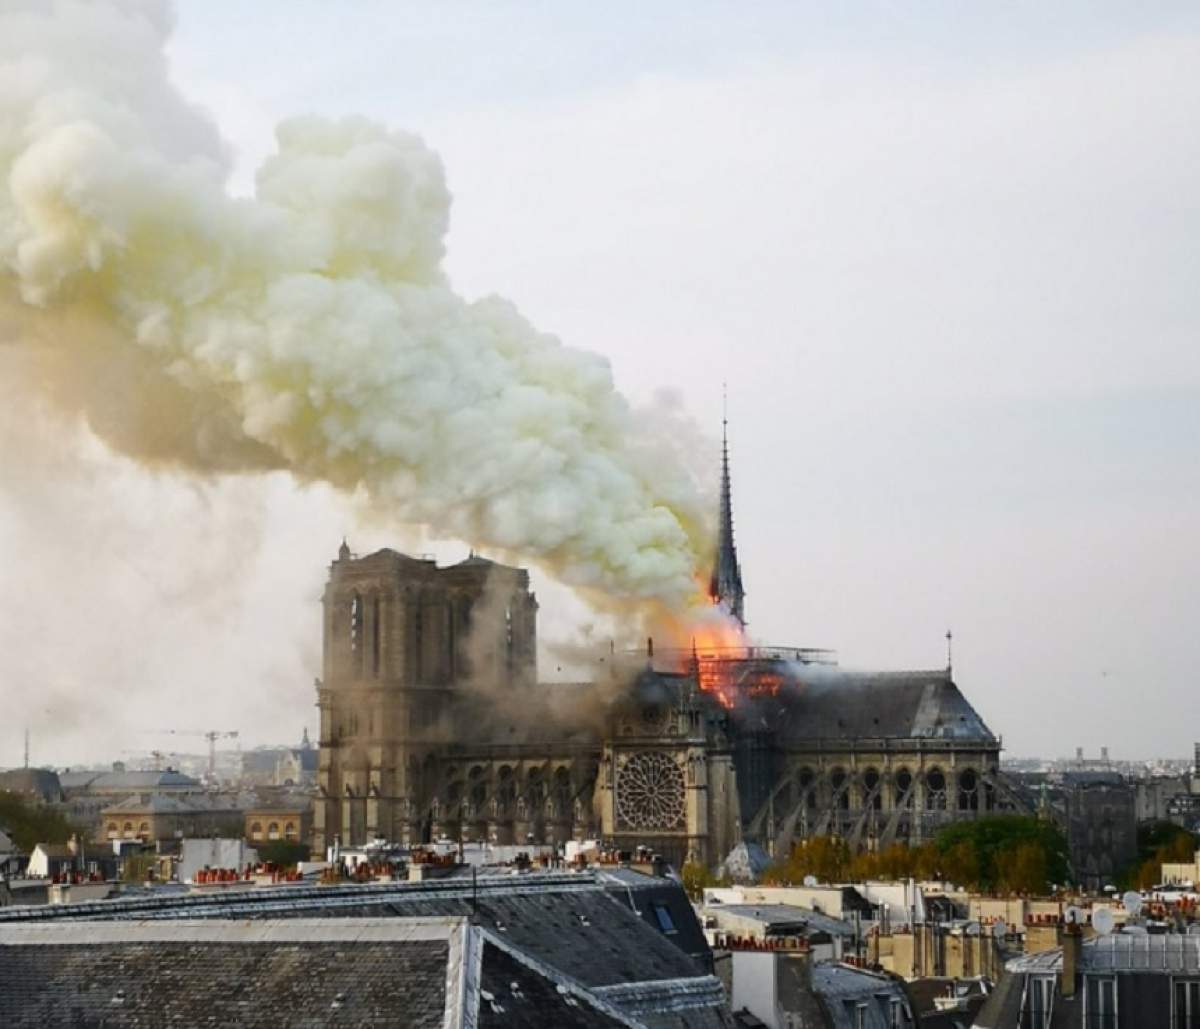 Muncitorii care renovau Catedrala Notre-Dame au fumat pe şantier. Are sau nu legătură cu incendiul?